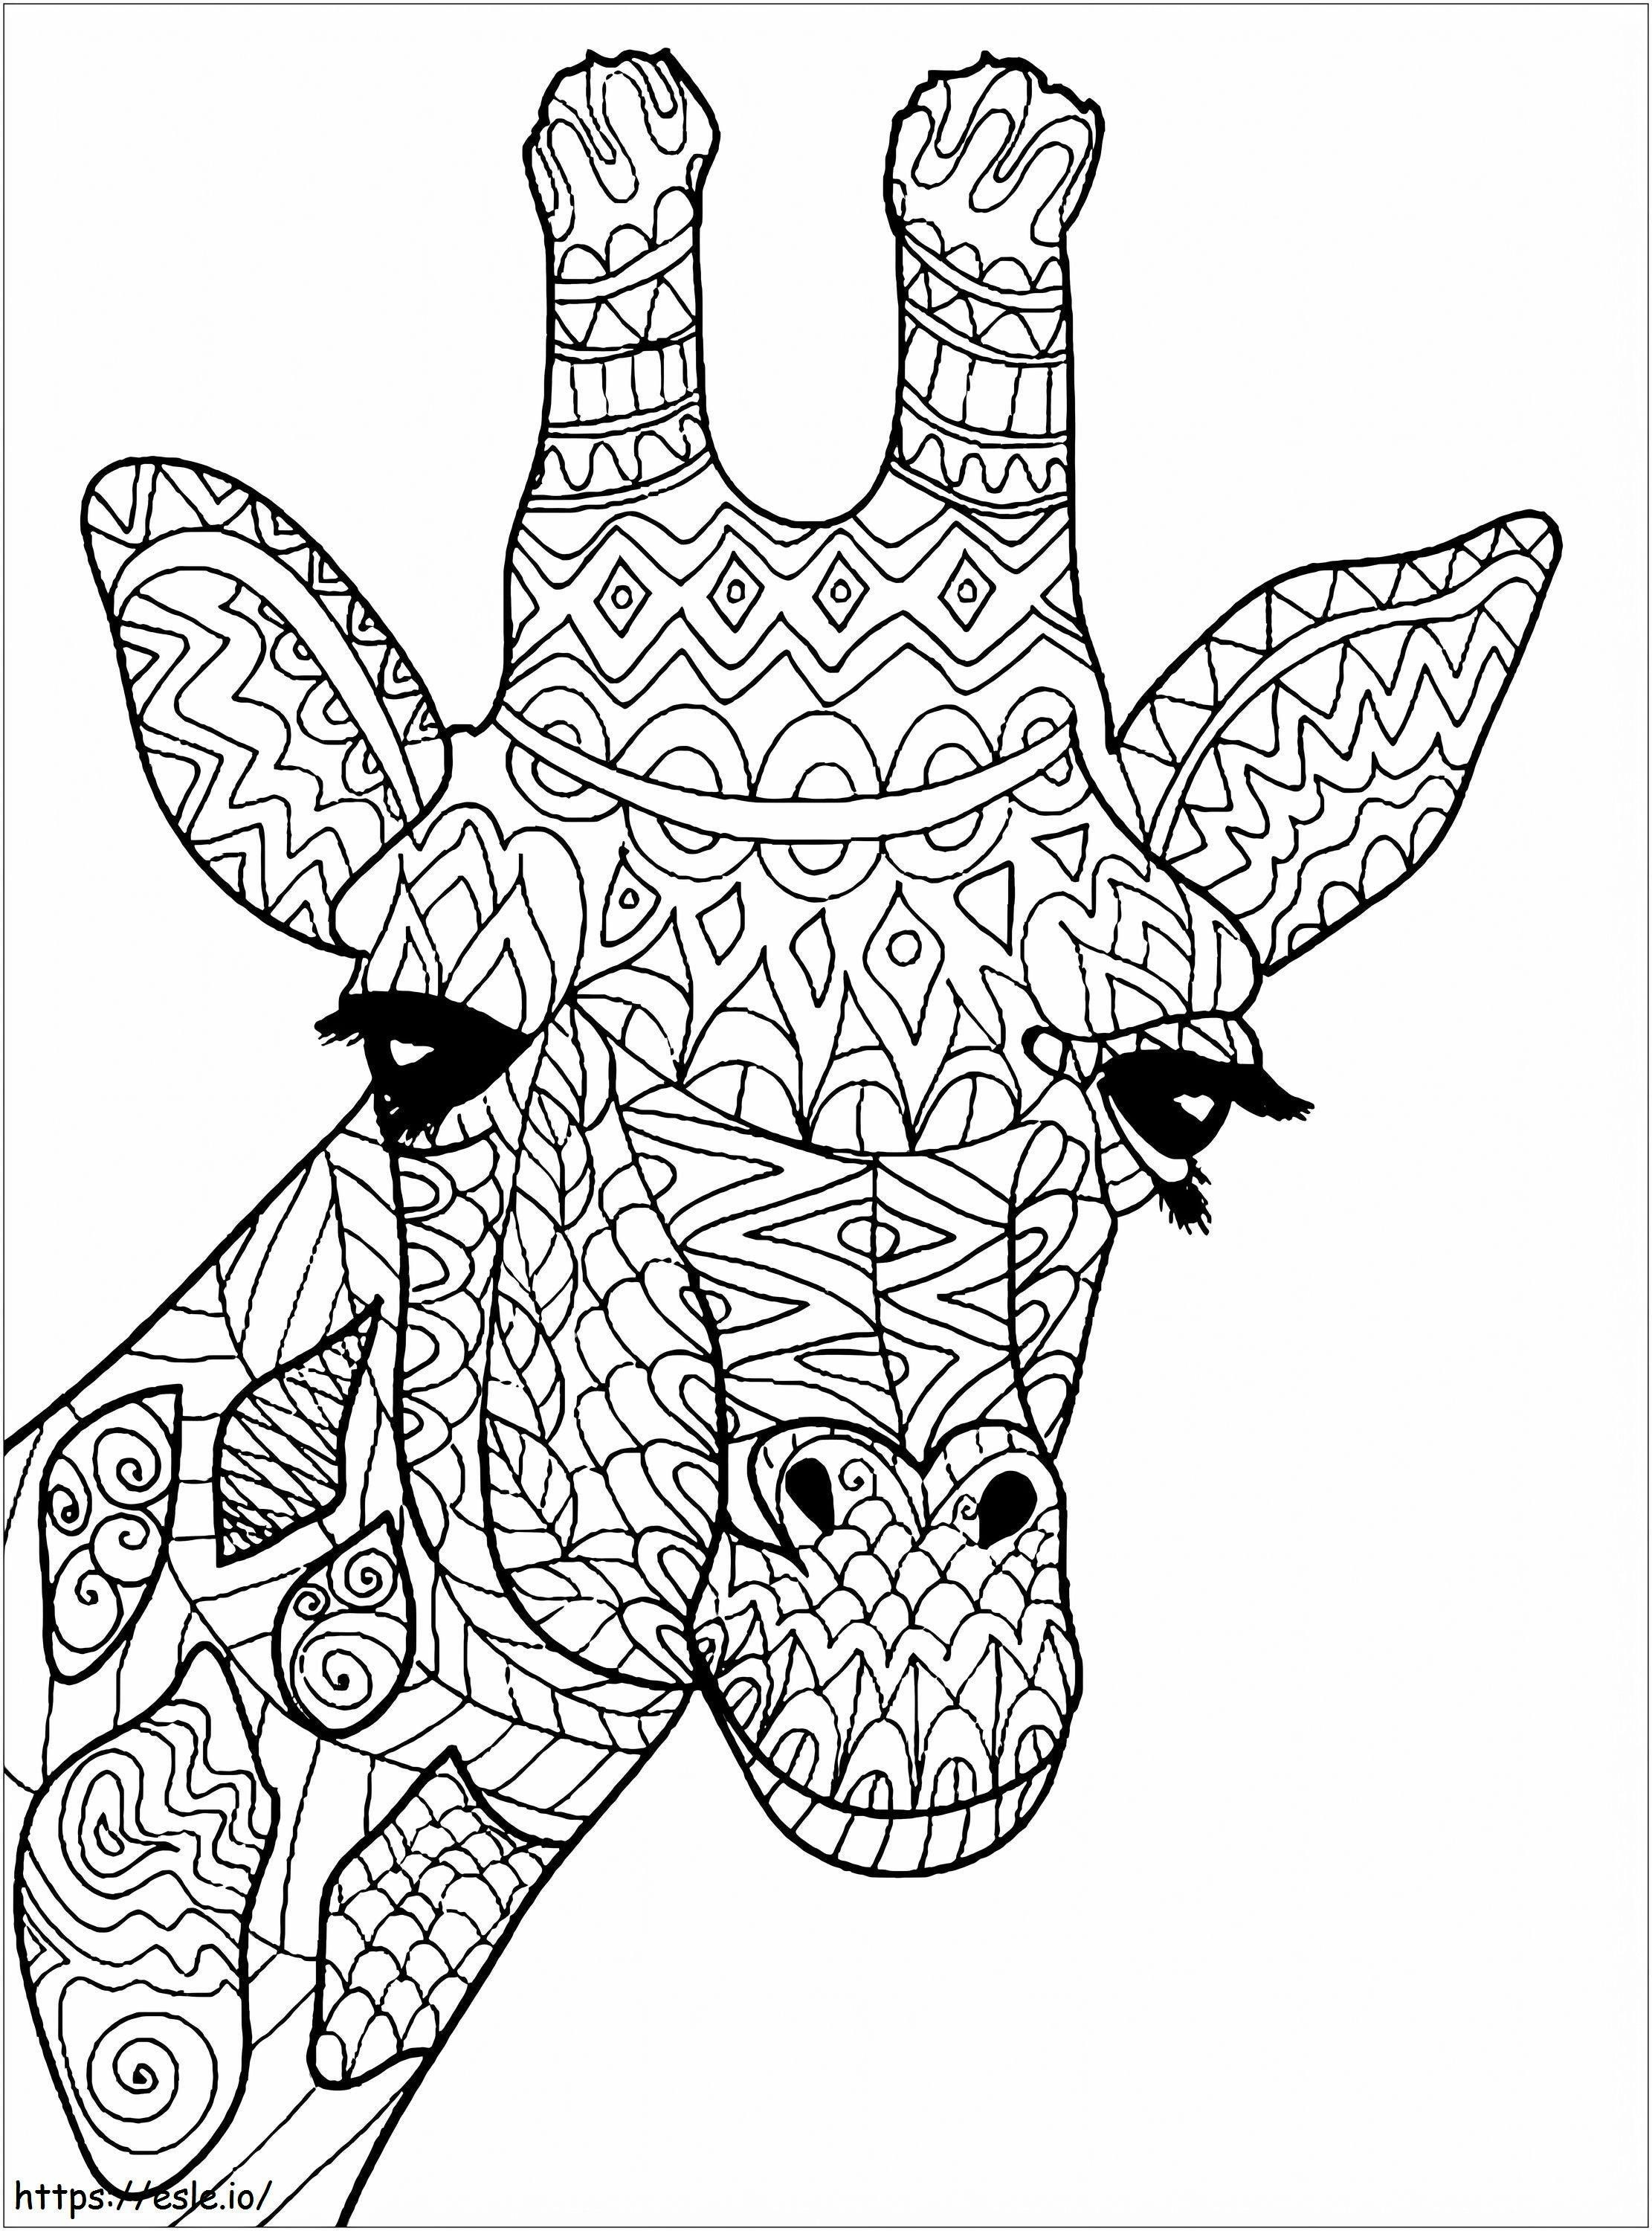 Mandala de cabeza de jirafa para colorear